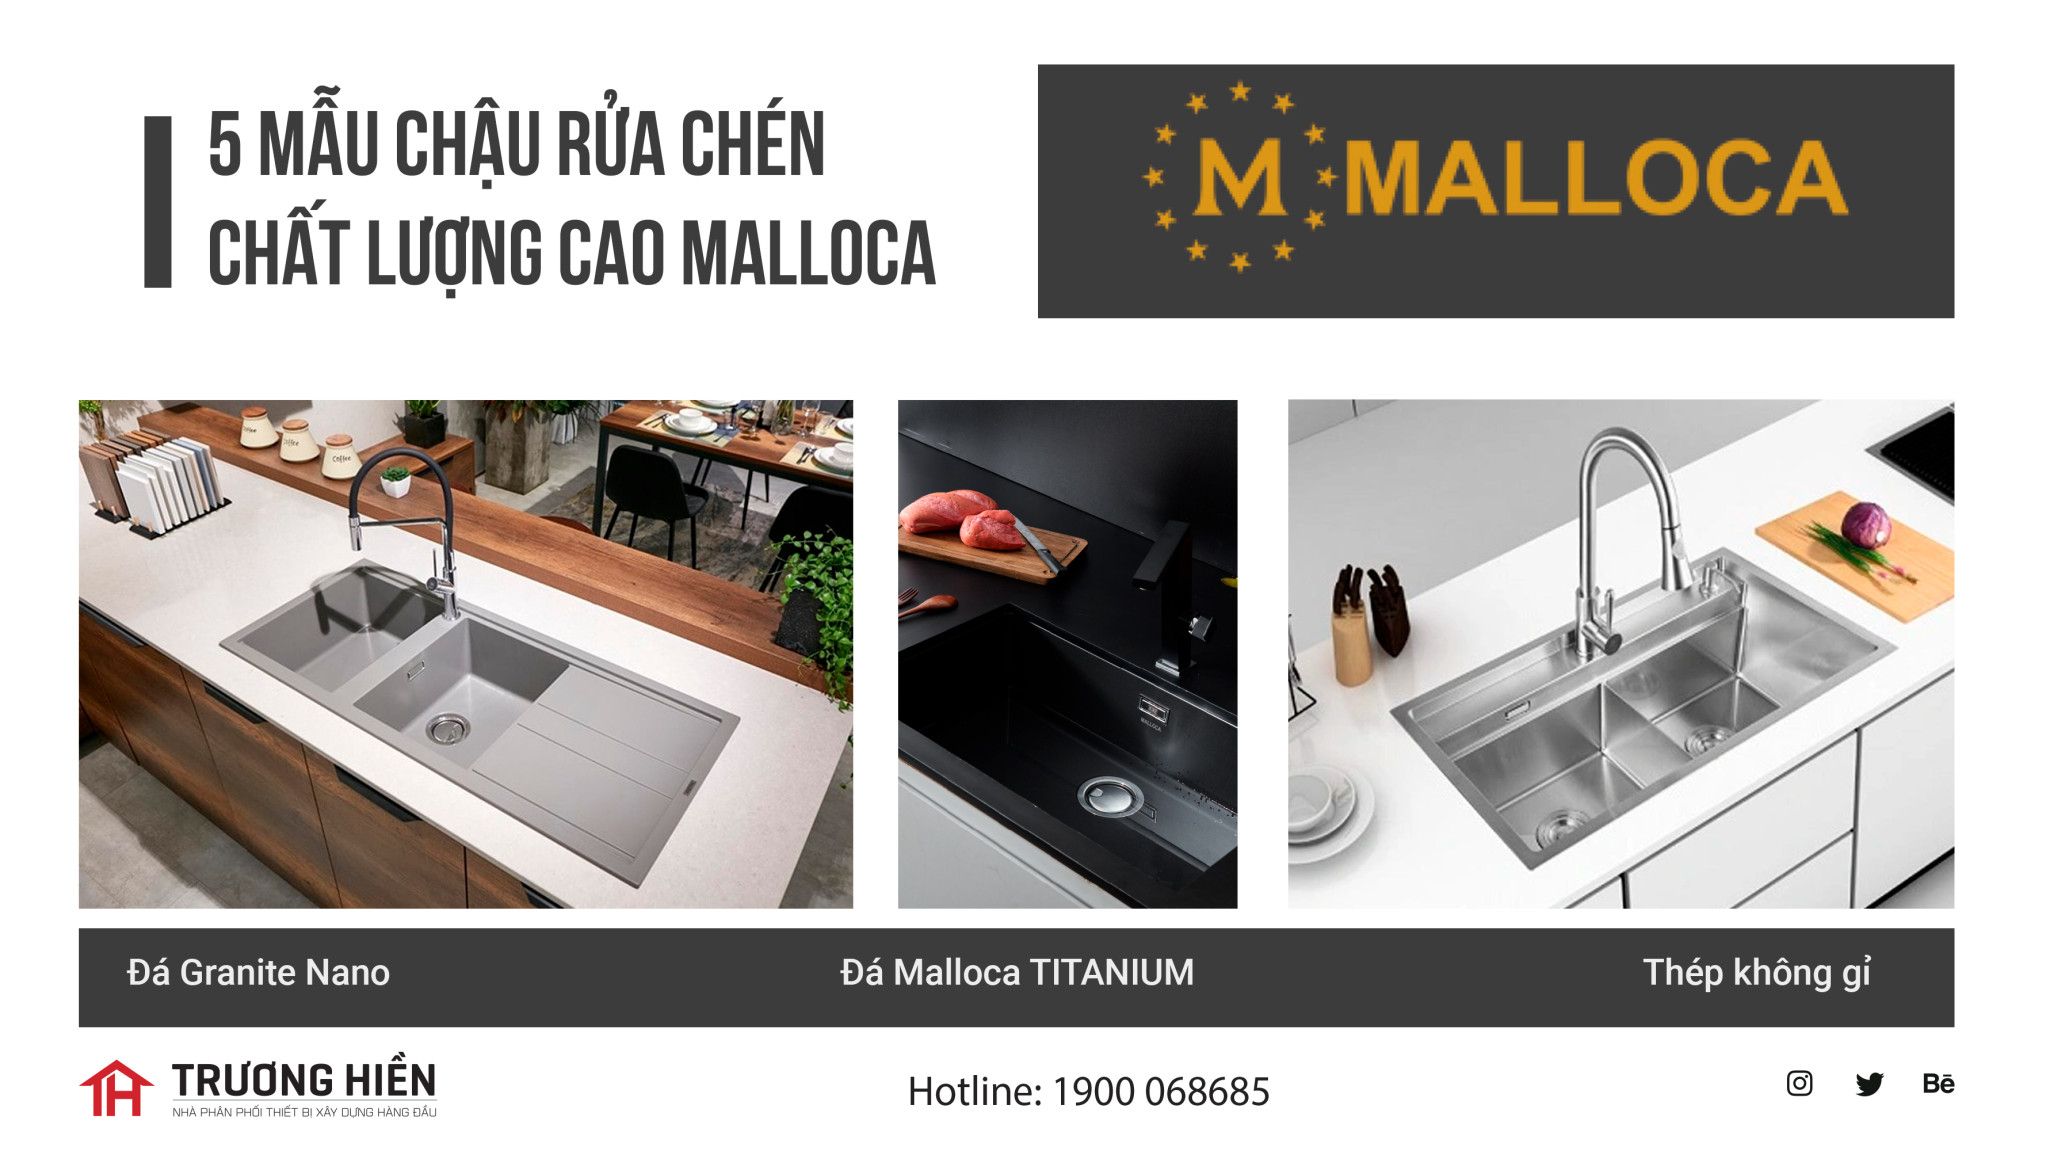 Khám phá 5 mẫu chậu rửa chén Malloca chất lượng cao được ưa chuộng nhất